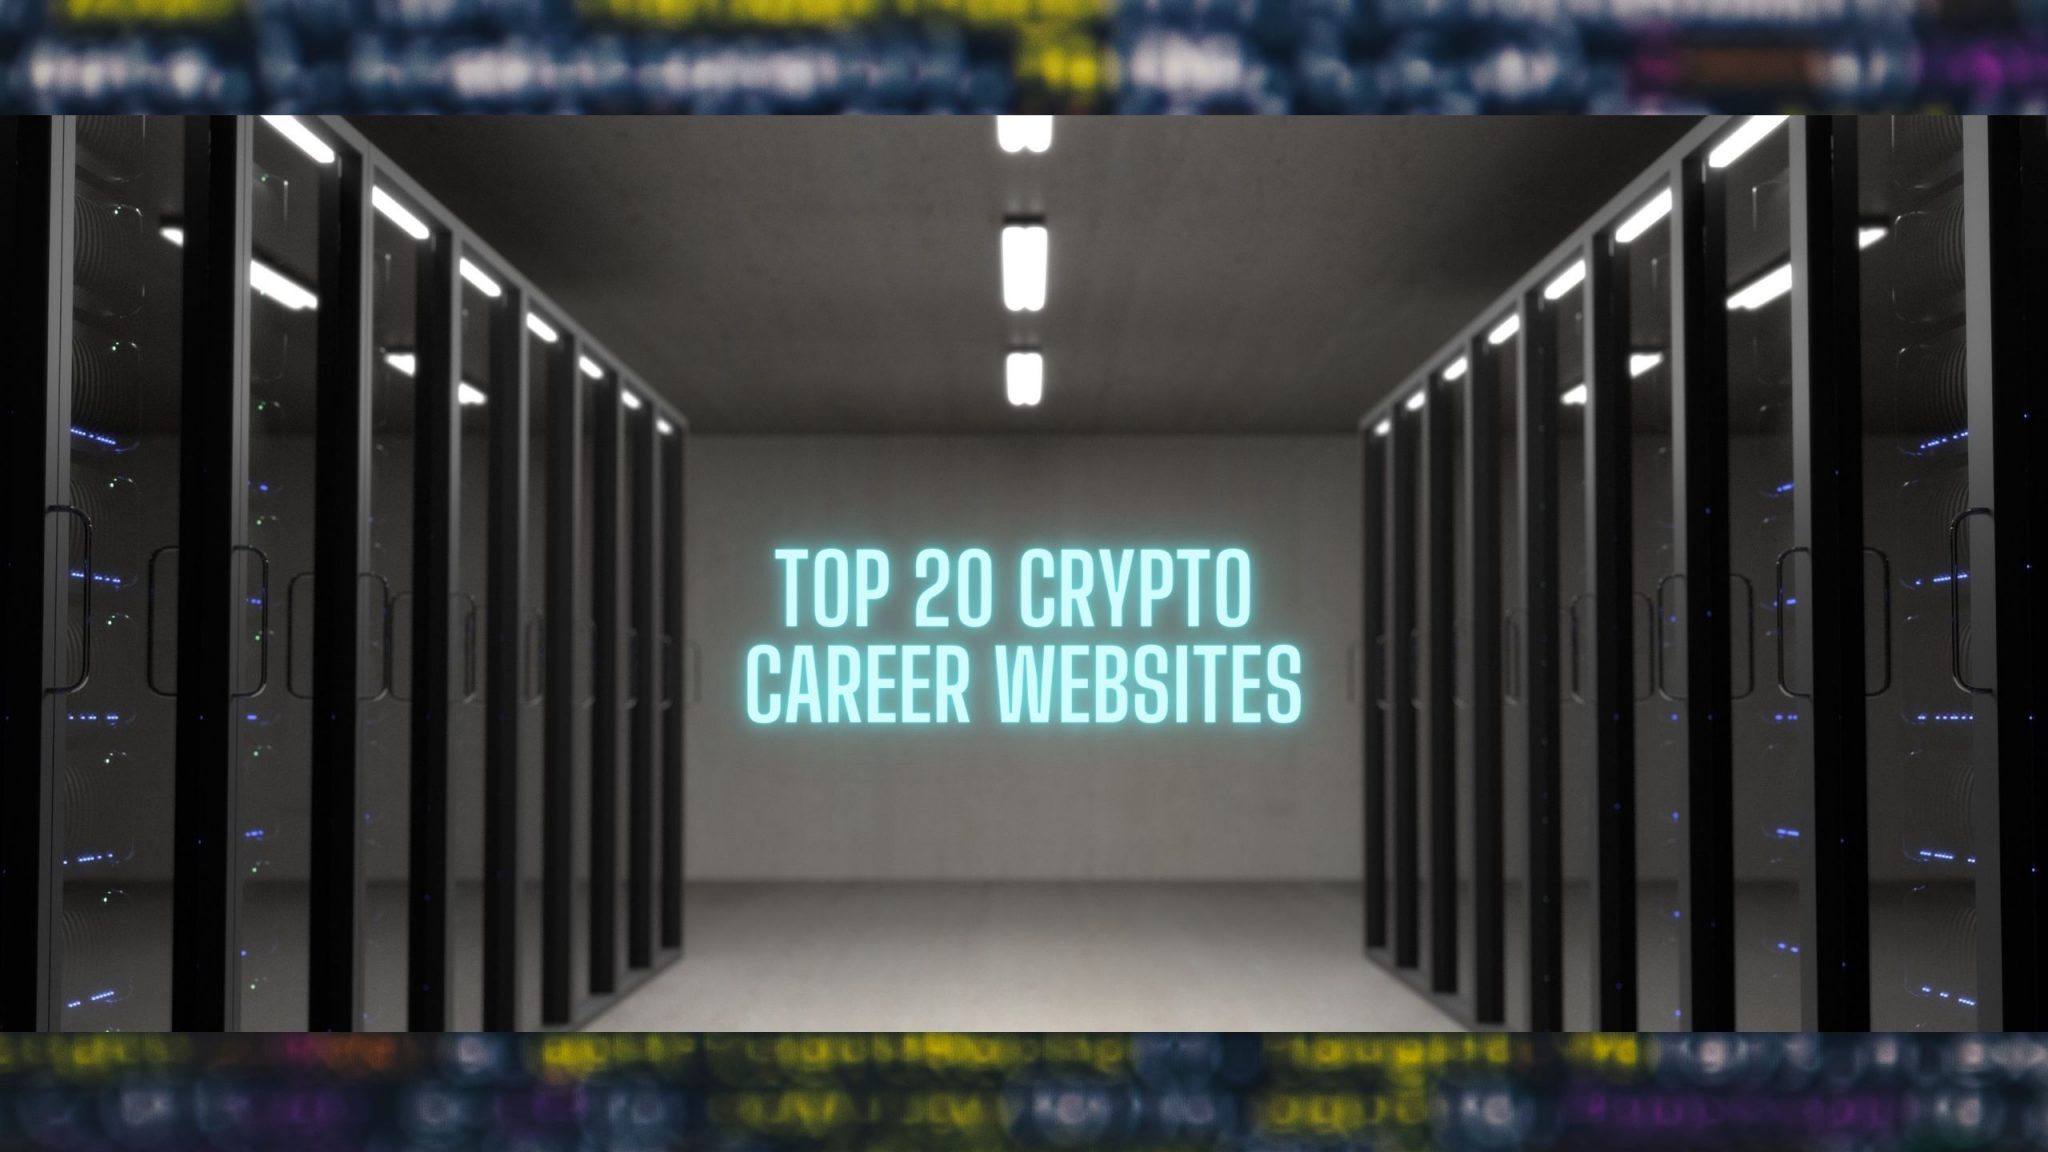 TOP 20 Crypto Career Websites - DezentralizedFinance.com